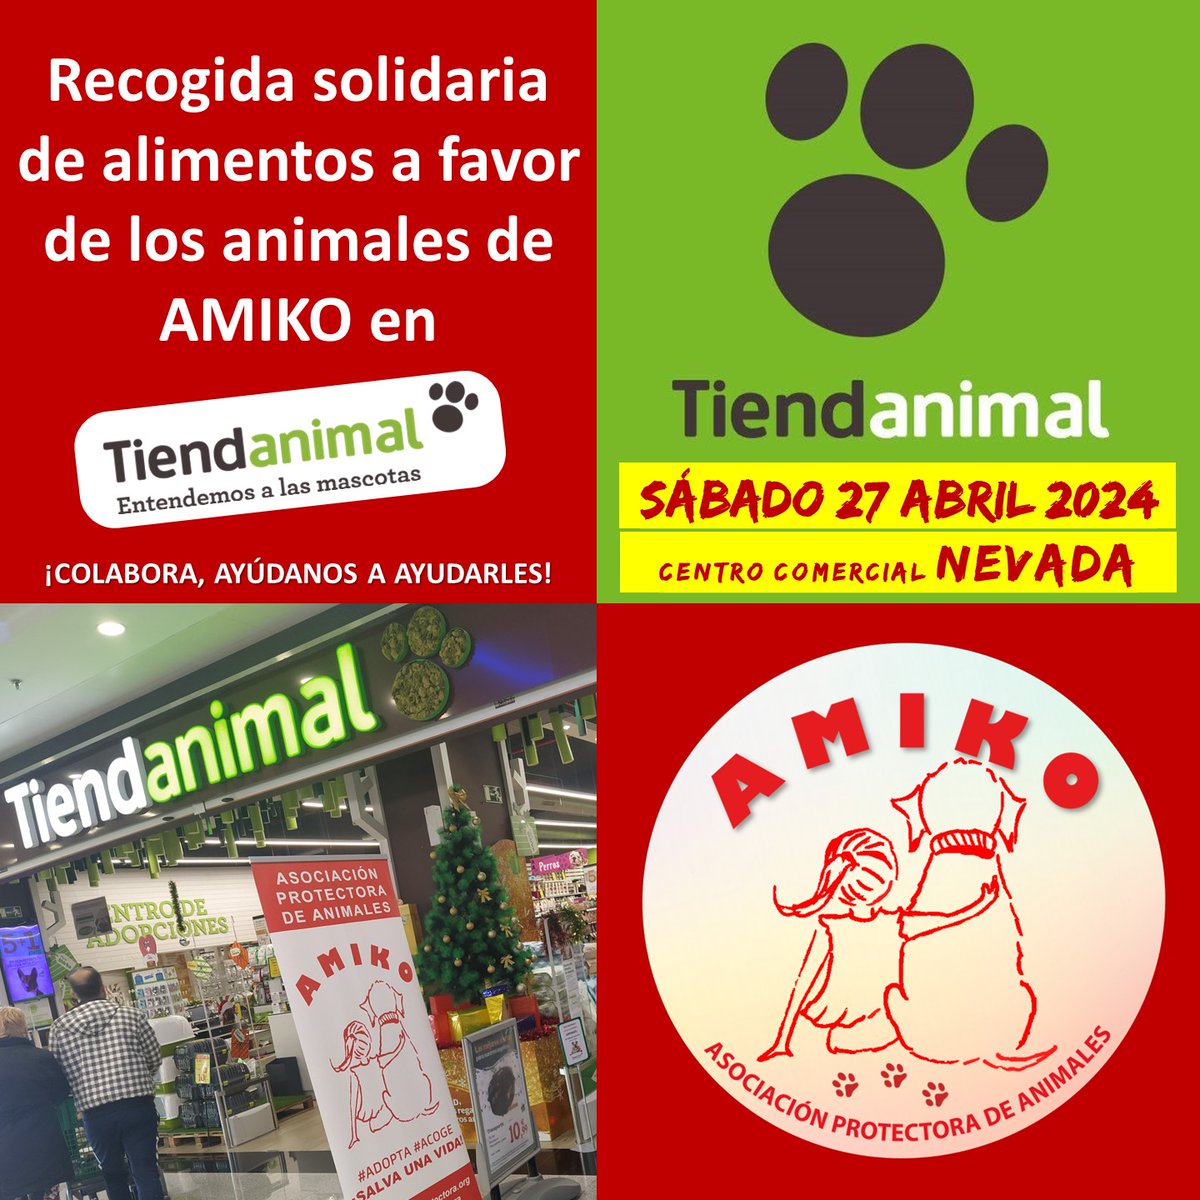 Sábado 27 de abril OS ESPERAMOS en 𝐓𝐢𝐞𝐧𝐝𝐚 𝐀𝐧𝐢𝐦𝐚𝐥 𝐝𝐞𝐥 𝐂𝐞𝐧𝐭𝐫𝐨 𝐂𝐨𝐦𝐞𝐫𝐜𝐢𝐚𝐥 𝐍𝐞𝐯𝐚𝐝𝐚 𝐝𝐞 𝐀𝐫𝐦𝐢𝐥𝐥𝐚 (𝐆𝐫𝐚𝐧𝐚𝐝𝐚) recogiendo alimentos y objetos para perros y gatos, víctimas de abandono y maltrato a favor de #AMIKOprotectora.🐾😍